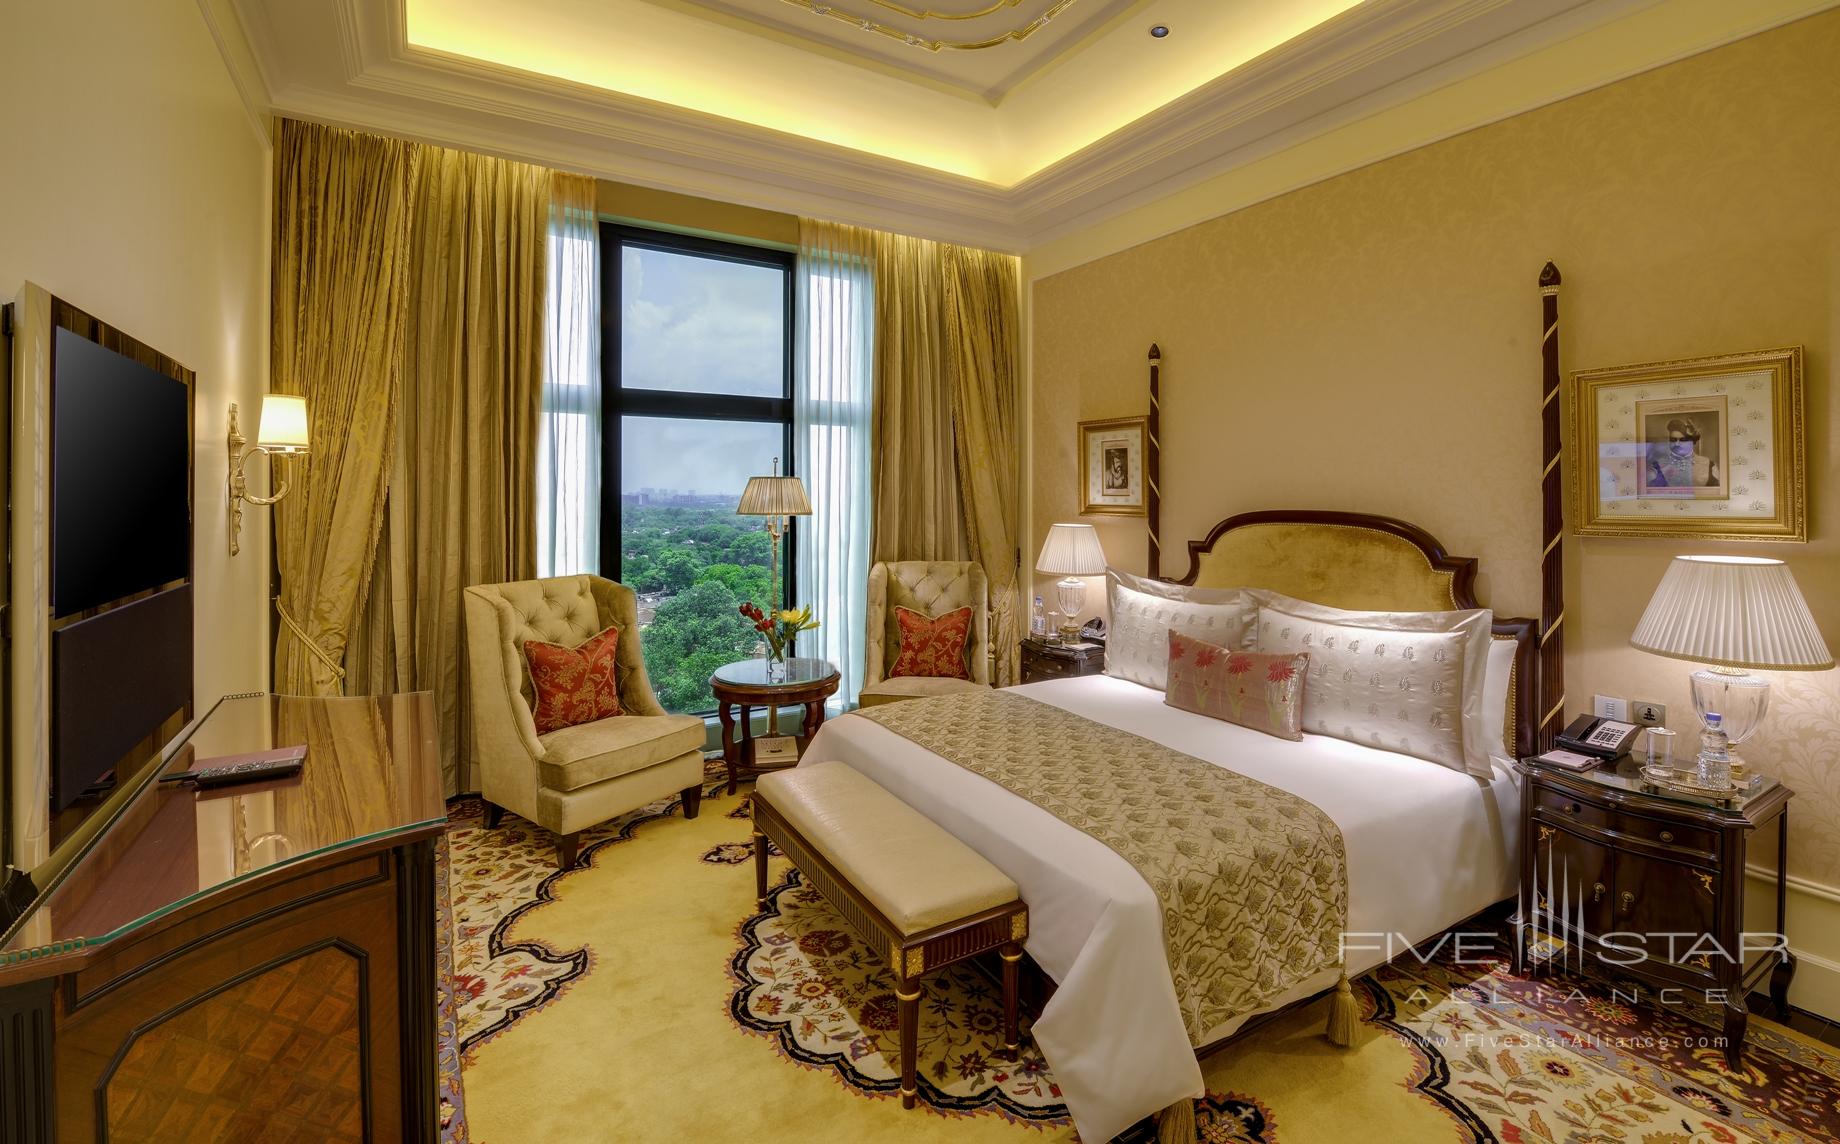 Grand Suite Bedroom at Leela Palace New Delhi